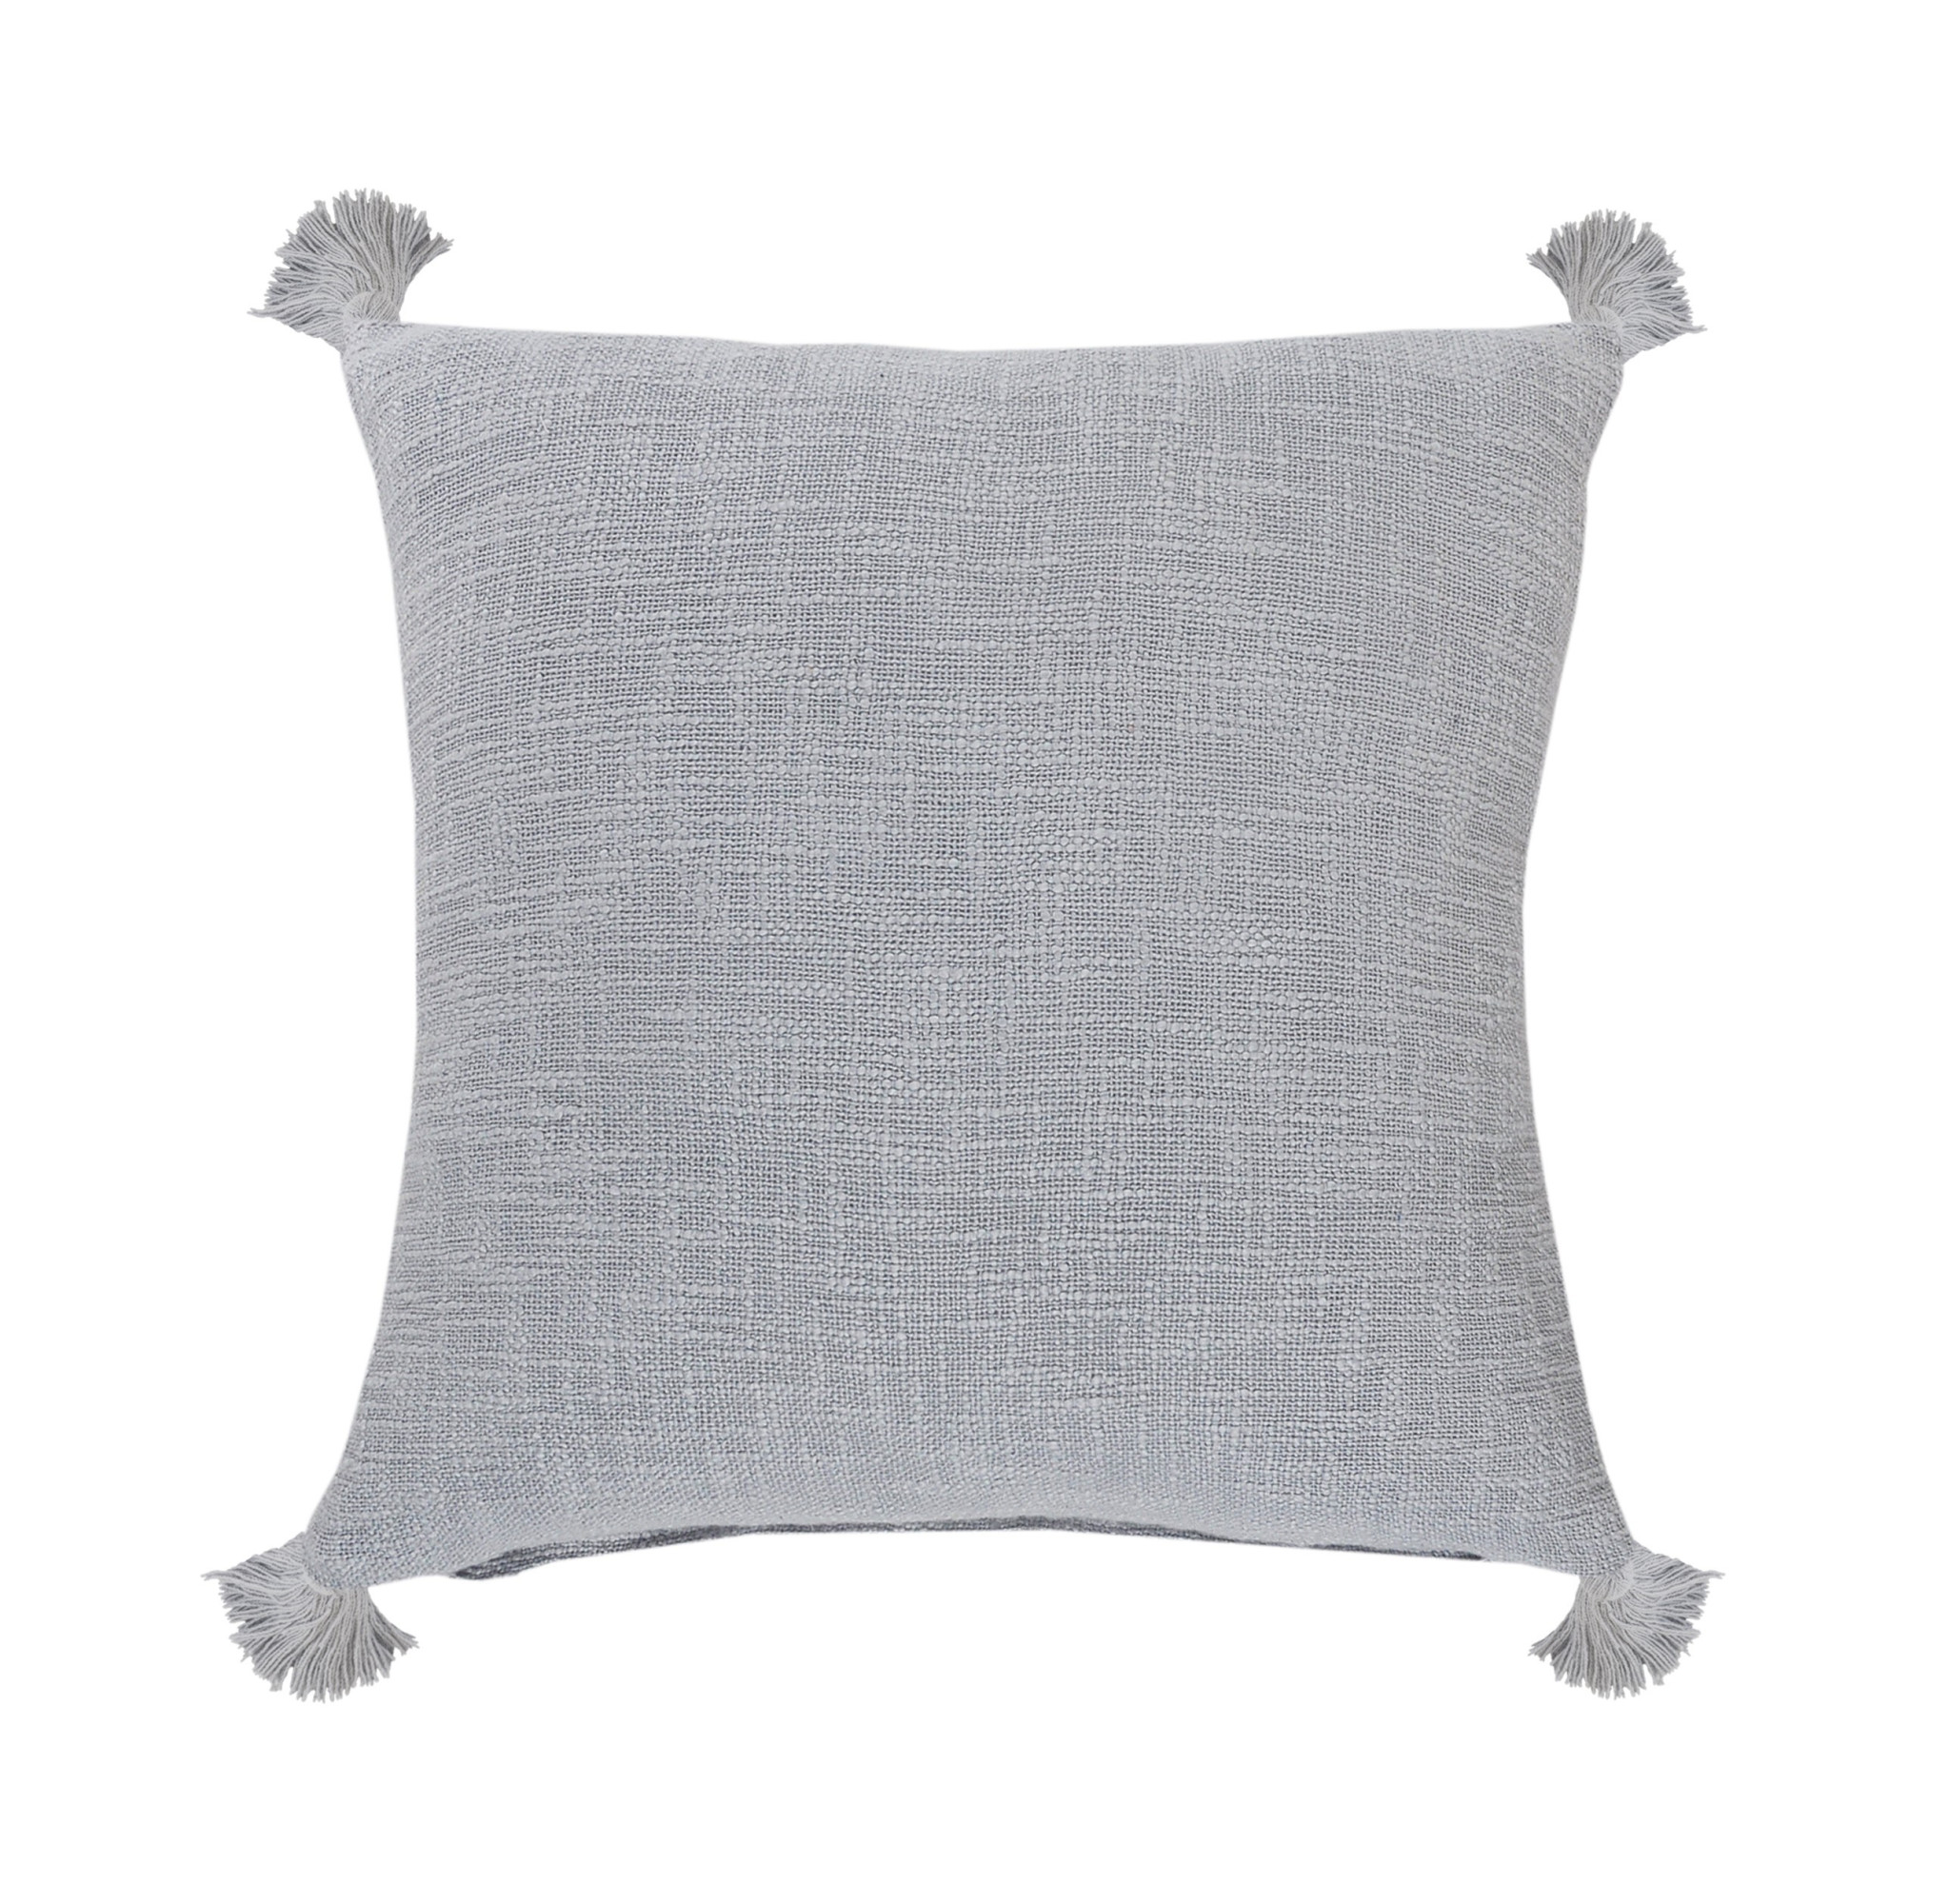 20" X 20" Light Gray 100% Cotton Zippered Pillow-516876-1